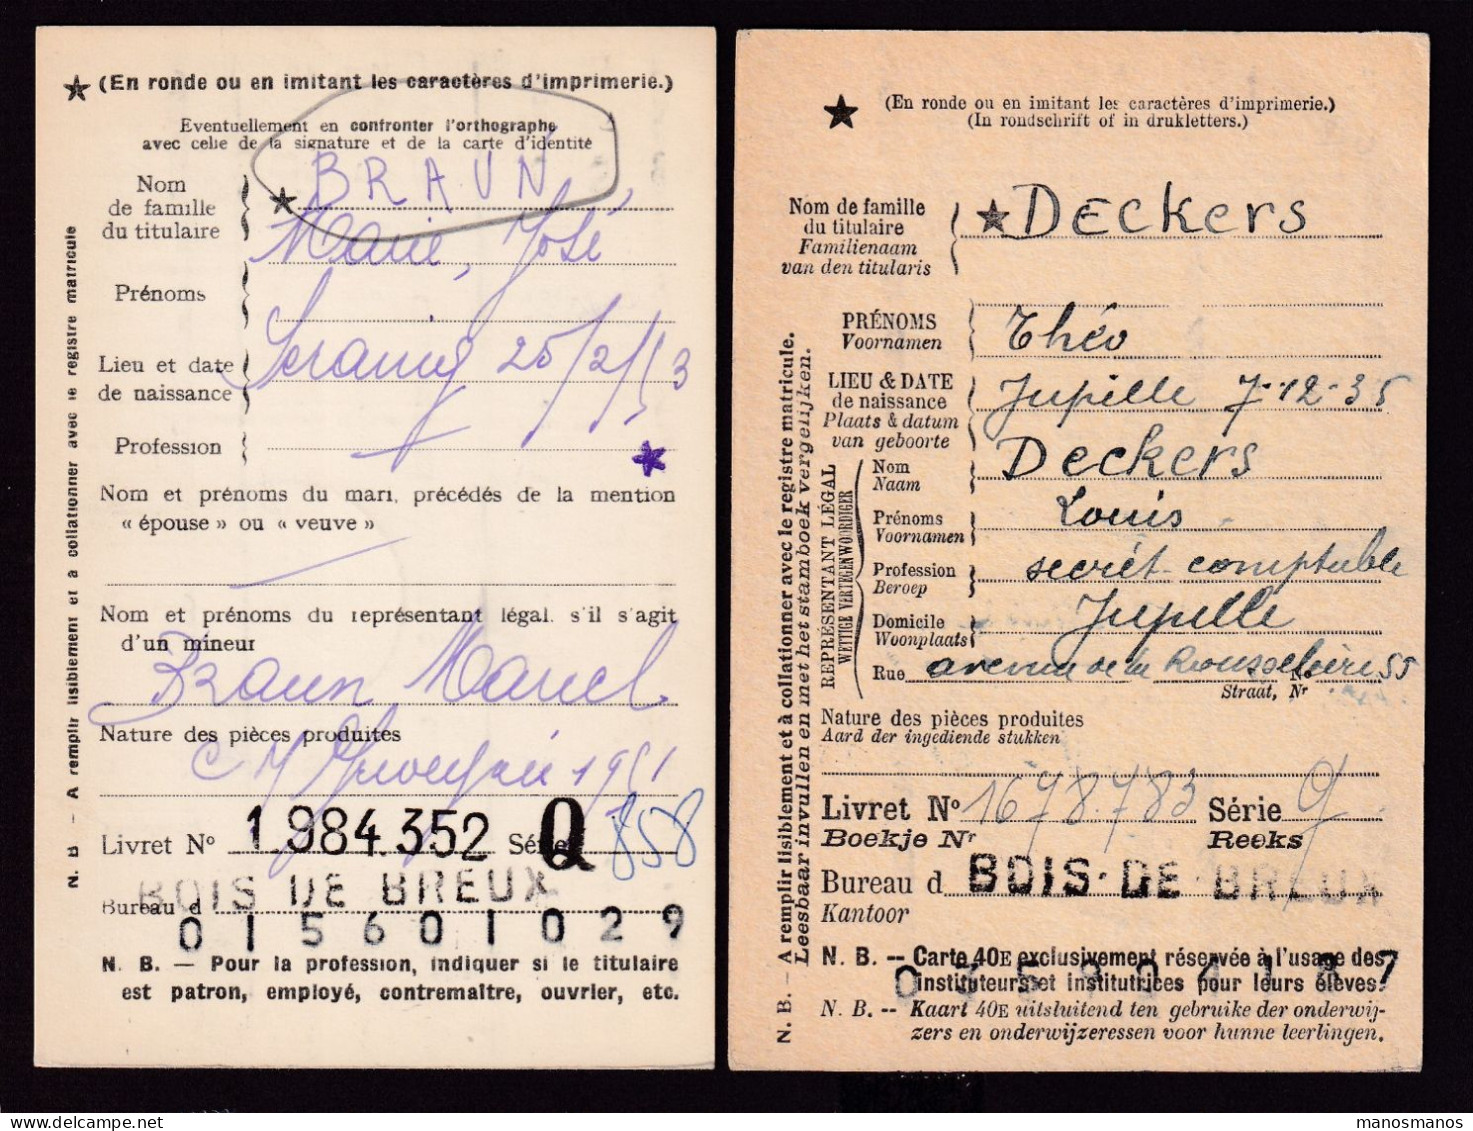 DDFF 554 -- BOIS DE BREUX - 2 X Carte De Caisse D'Epargne Postale/Postspaarkaskaart 1947/1953 - Grande Griffe - Franchise